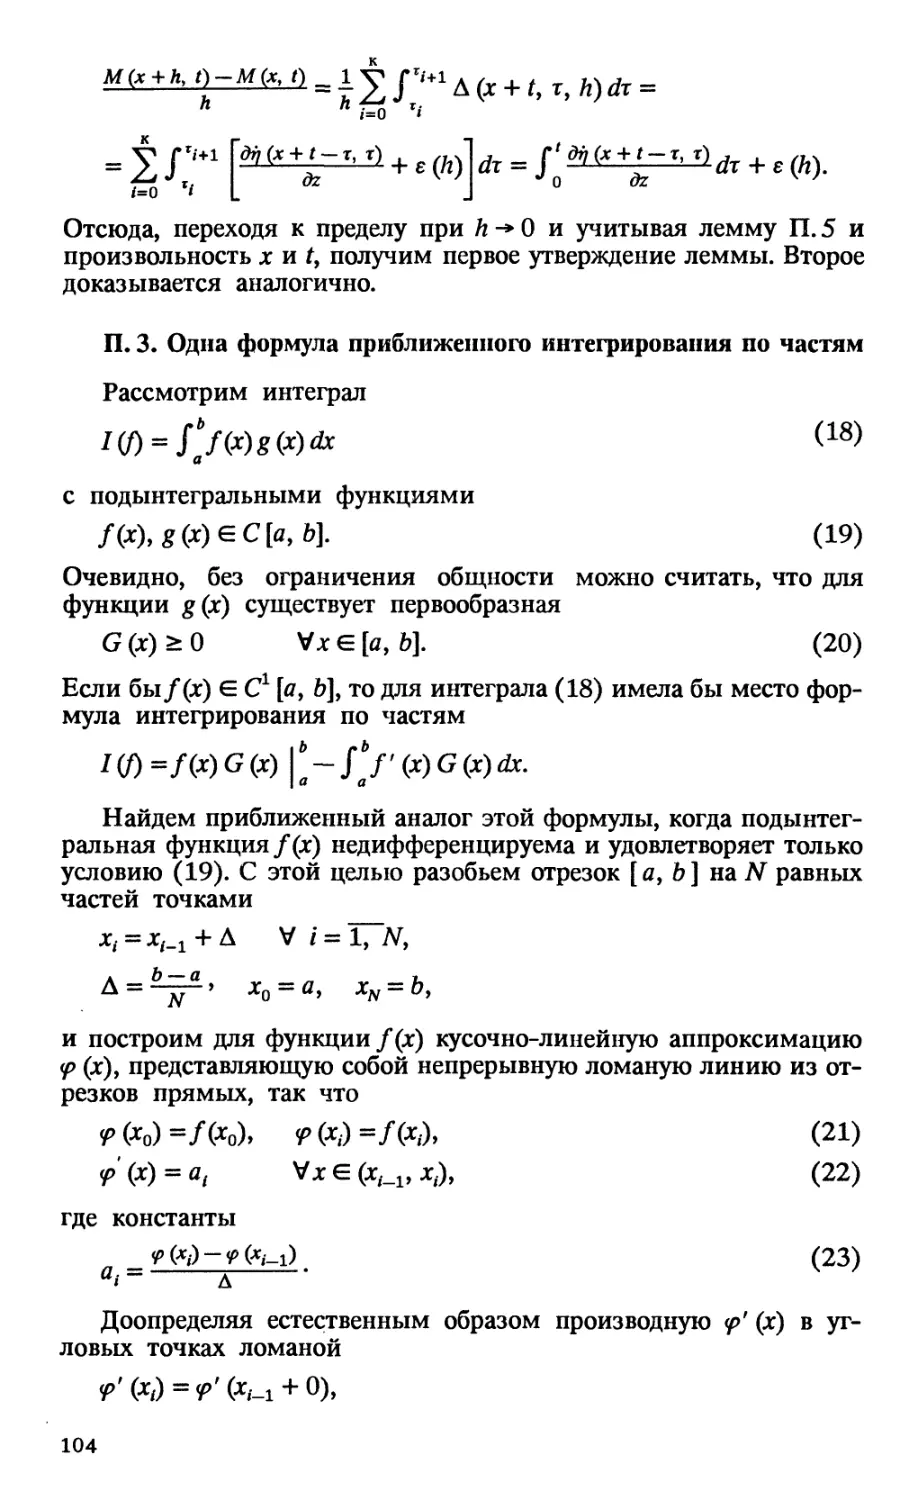 П.З. Одна формула приближенного интегрирования по частям